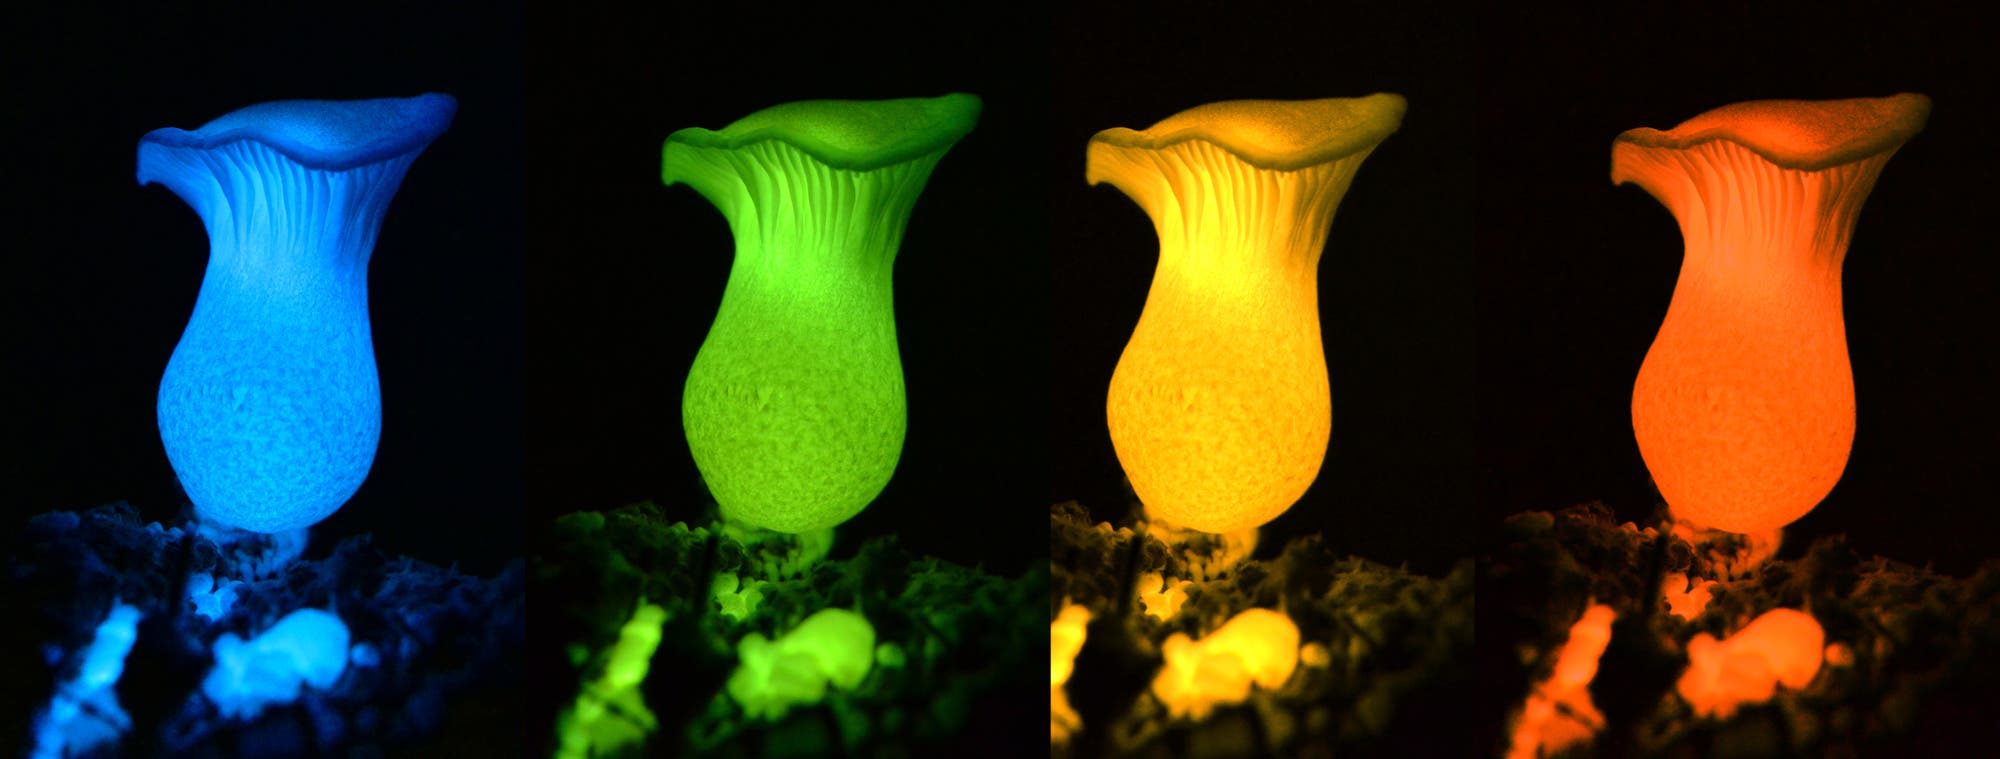 Vier Pilze, die in blau, grün, gelb und rot leuchten. Echt ist nur die grüne Farbe, der Rest ist Bildbearbeitung. Das Forscherteam hofft allerdings, den Effekt irgendwann auch mit molekularbiologischen Methoden zu erzielen.